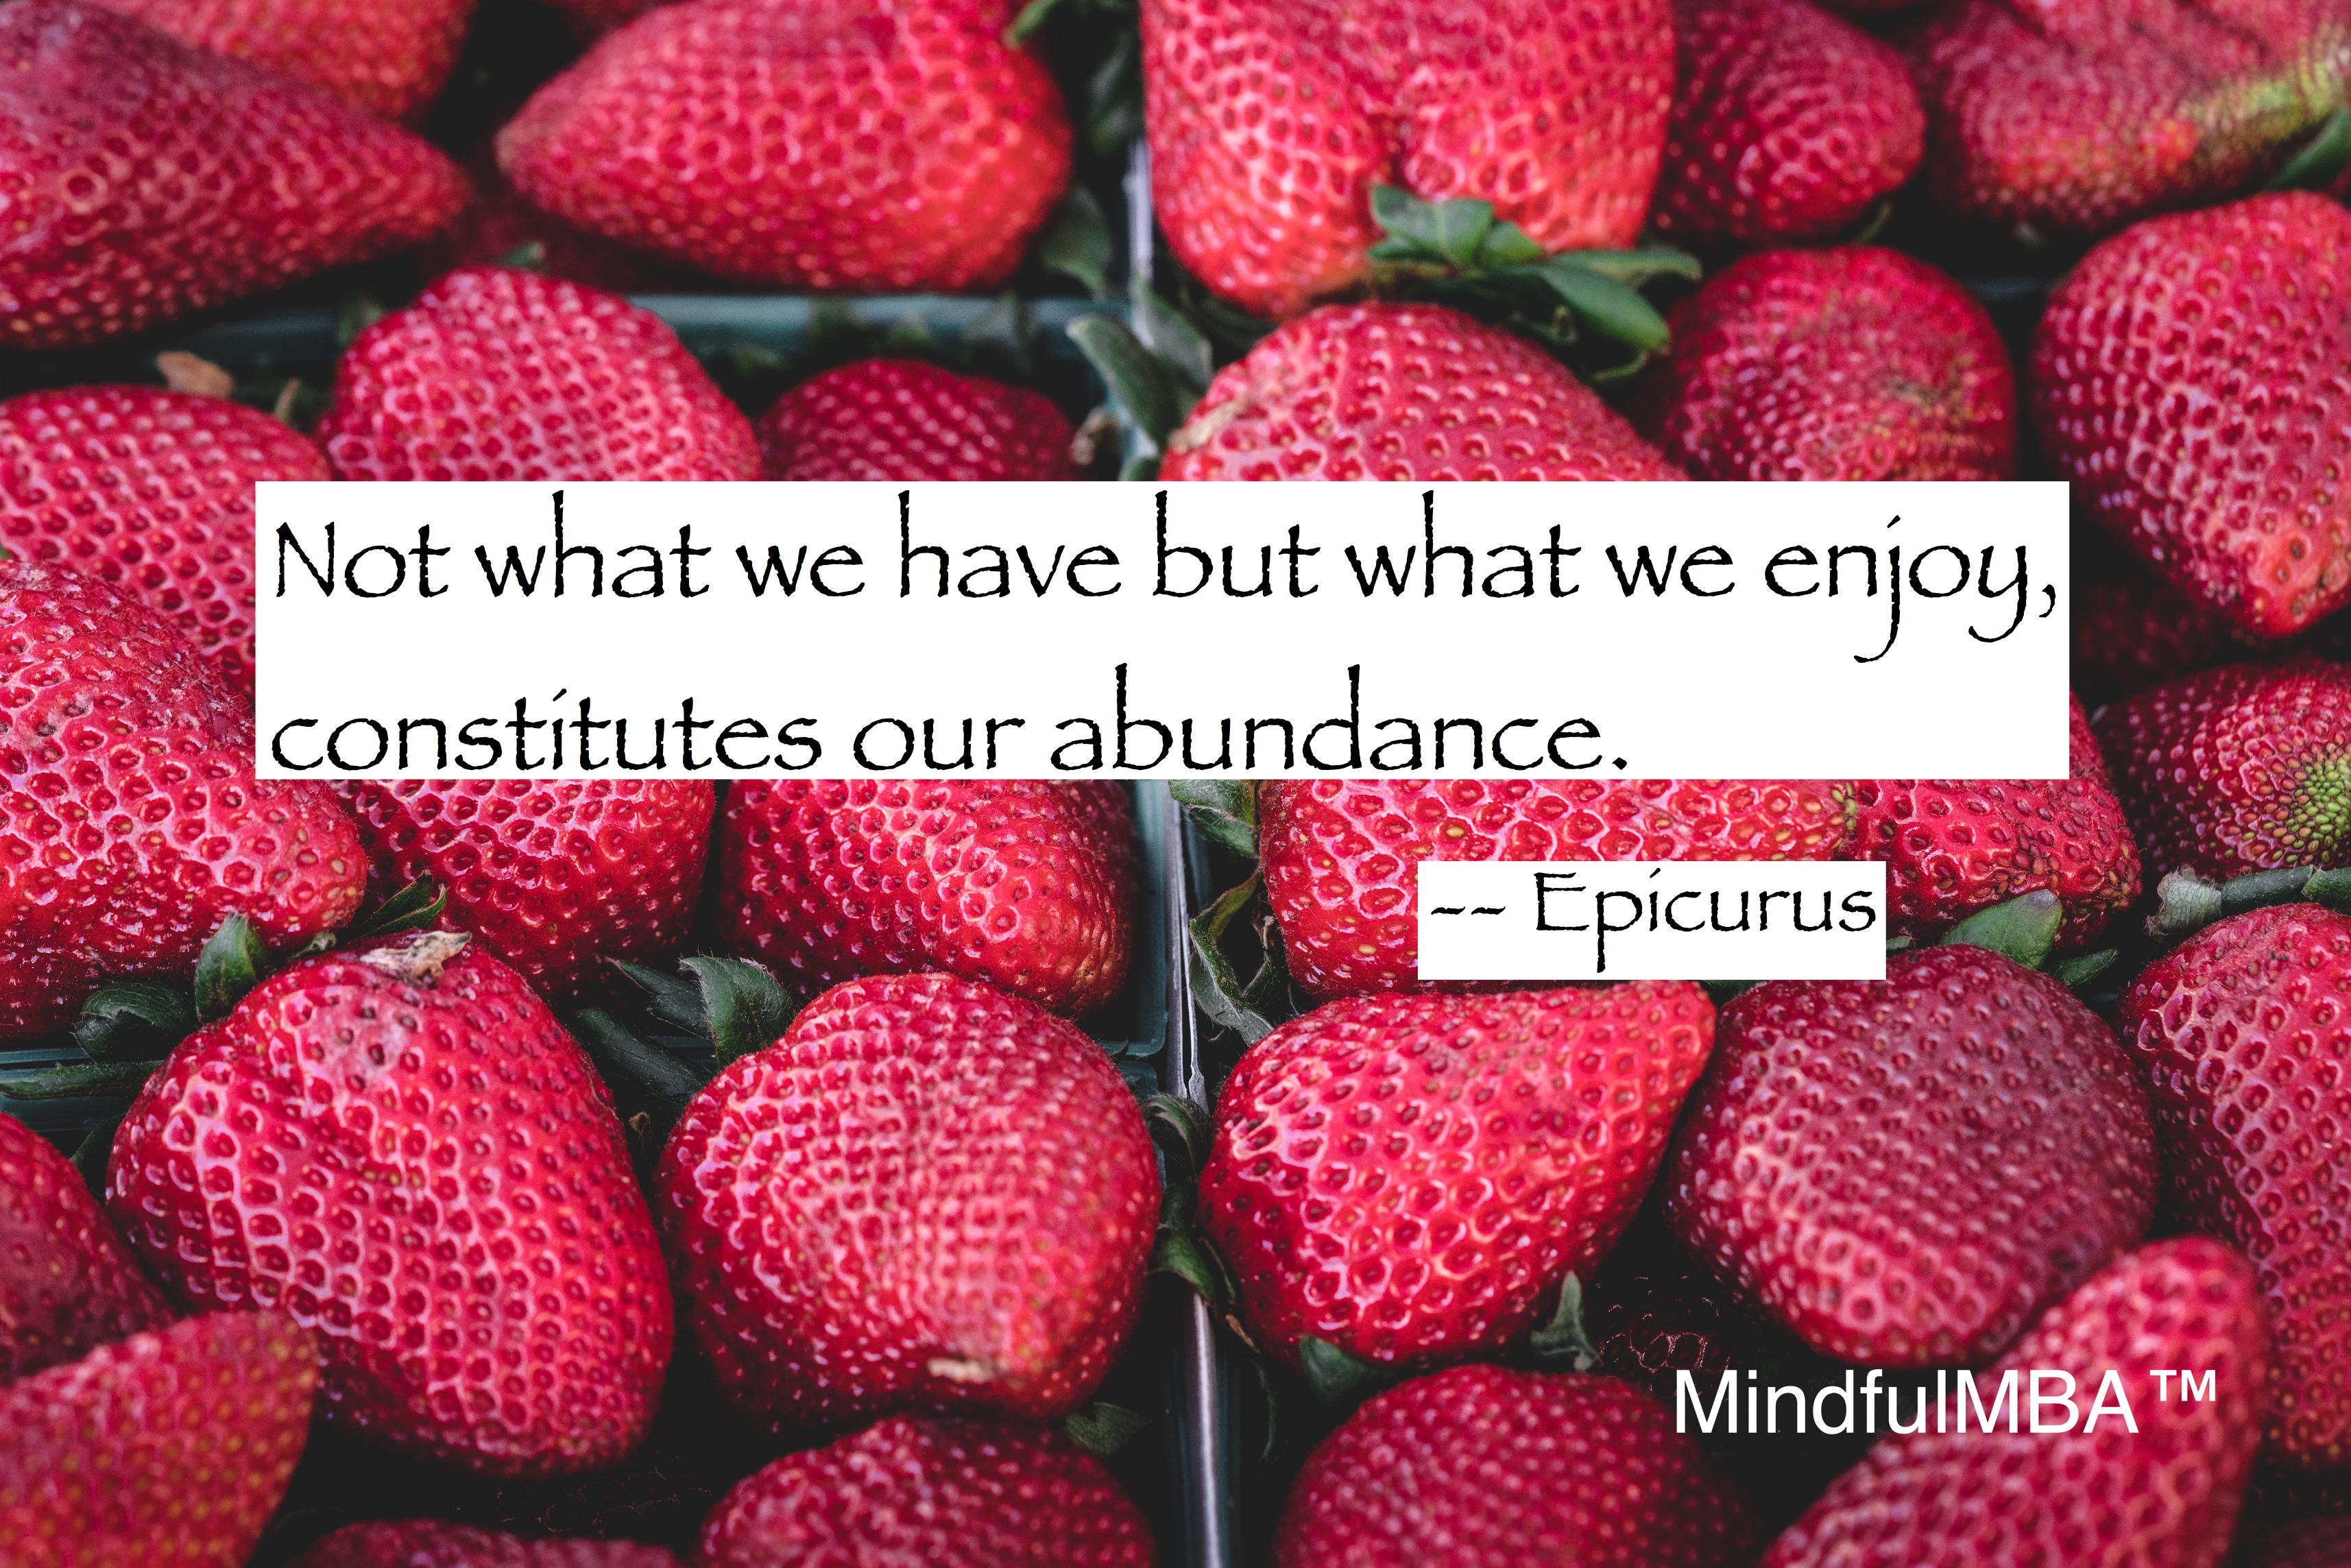 Epicurus abundance quote w tag